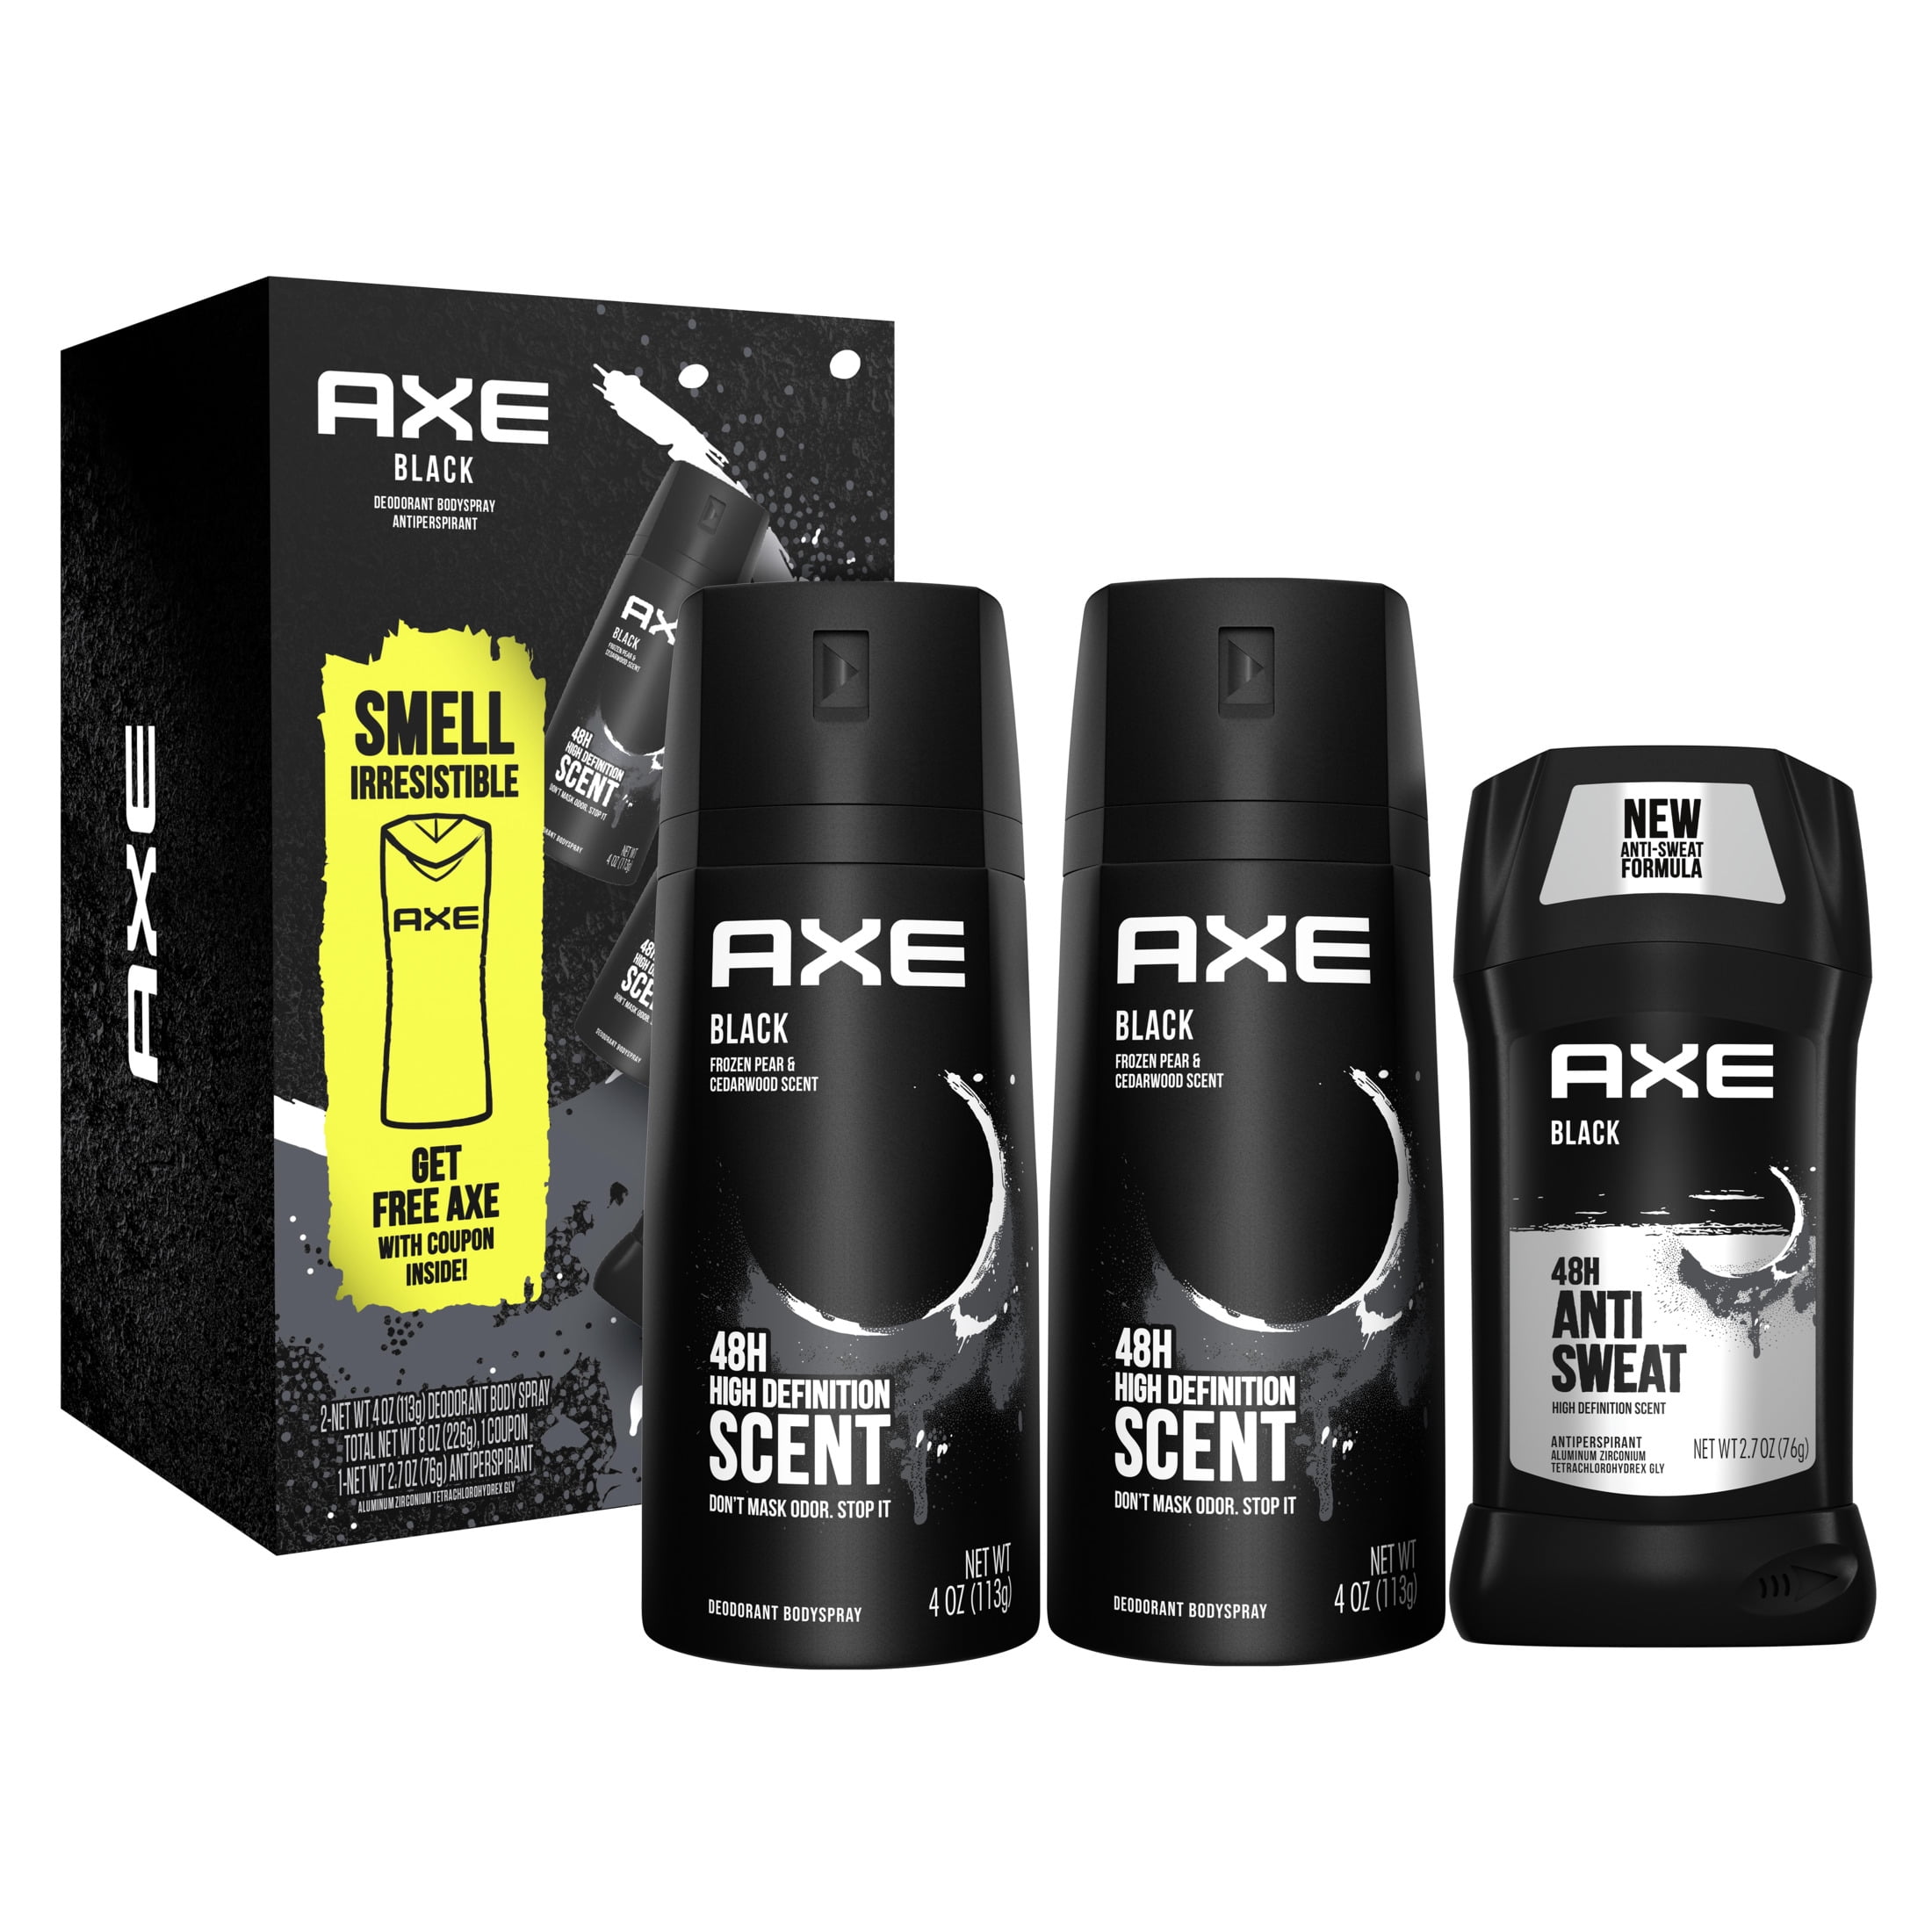 Groene achtergrond stil Streven 21 VALUE) AXE Black Deodorant Gift Pack for Men, 3 Count - Walmart.com